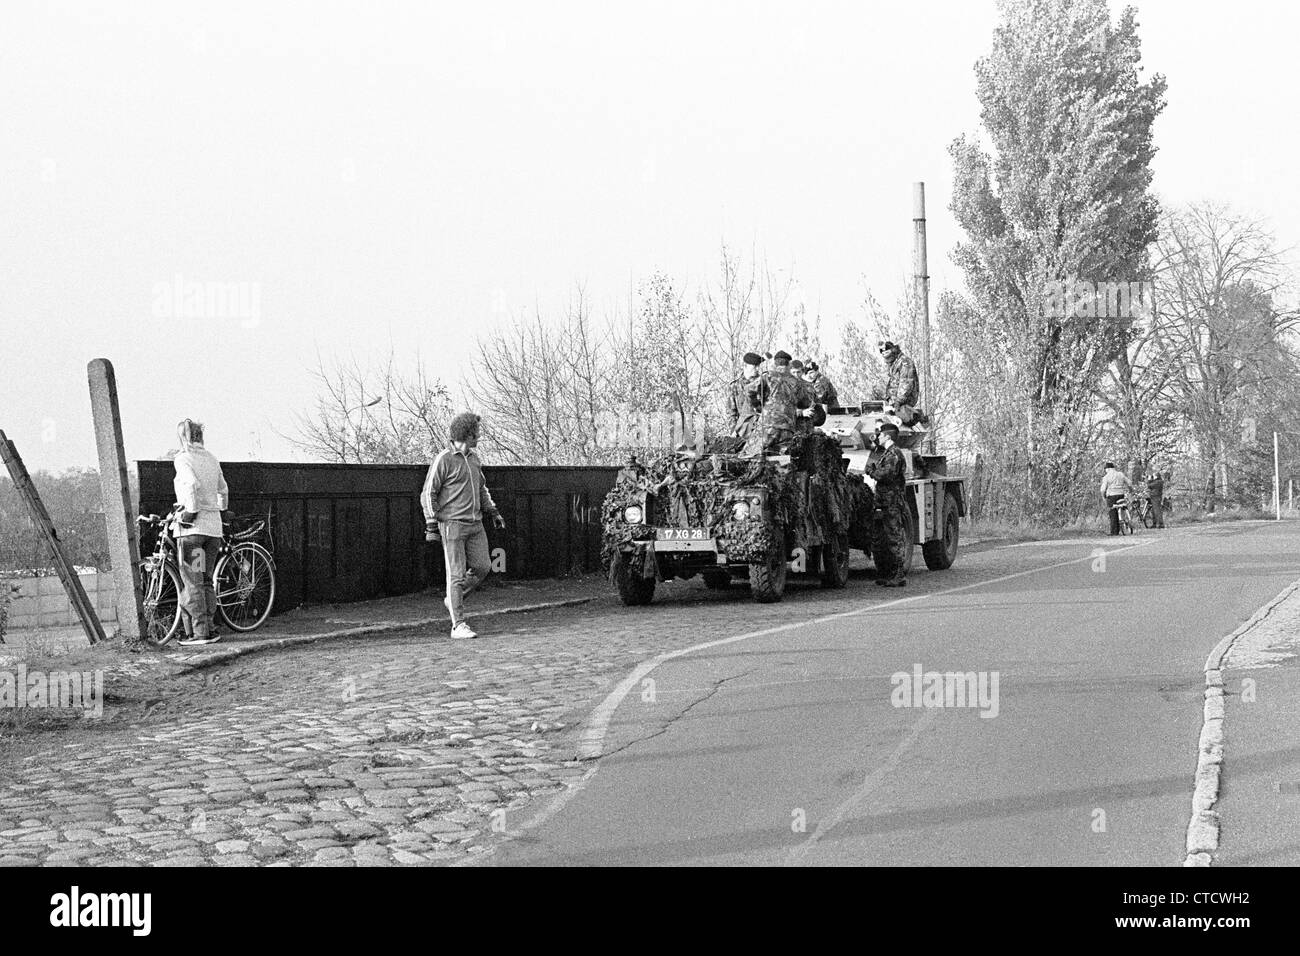 Le mur de Berlin et des soldats britanniques à Staaken durant la guerre froide Banque D'Images